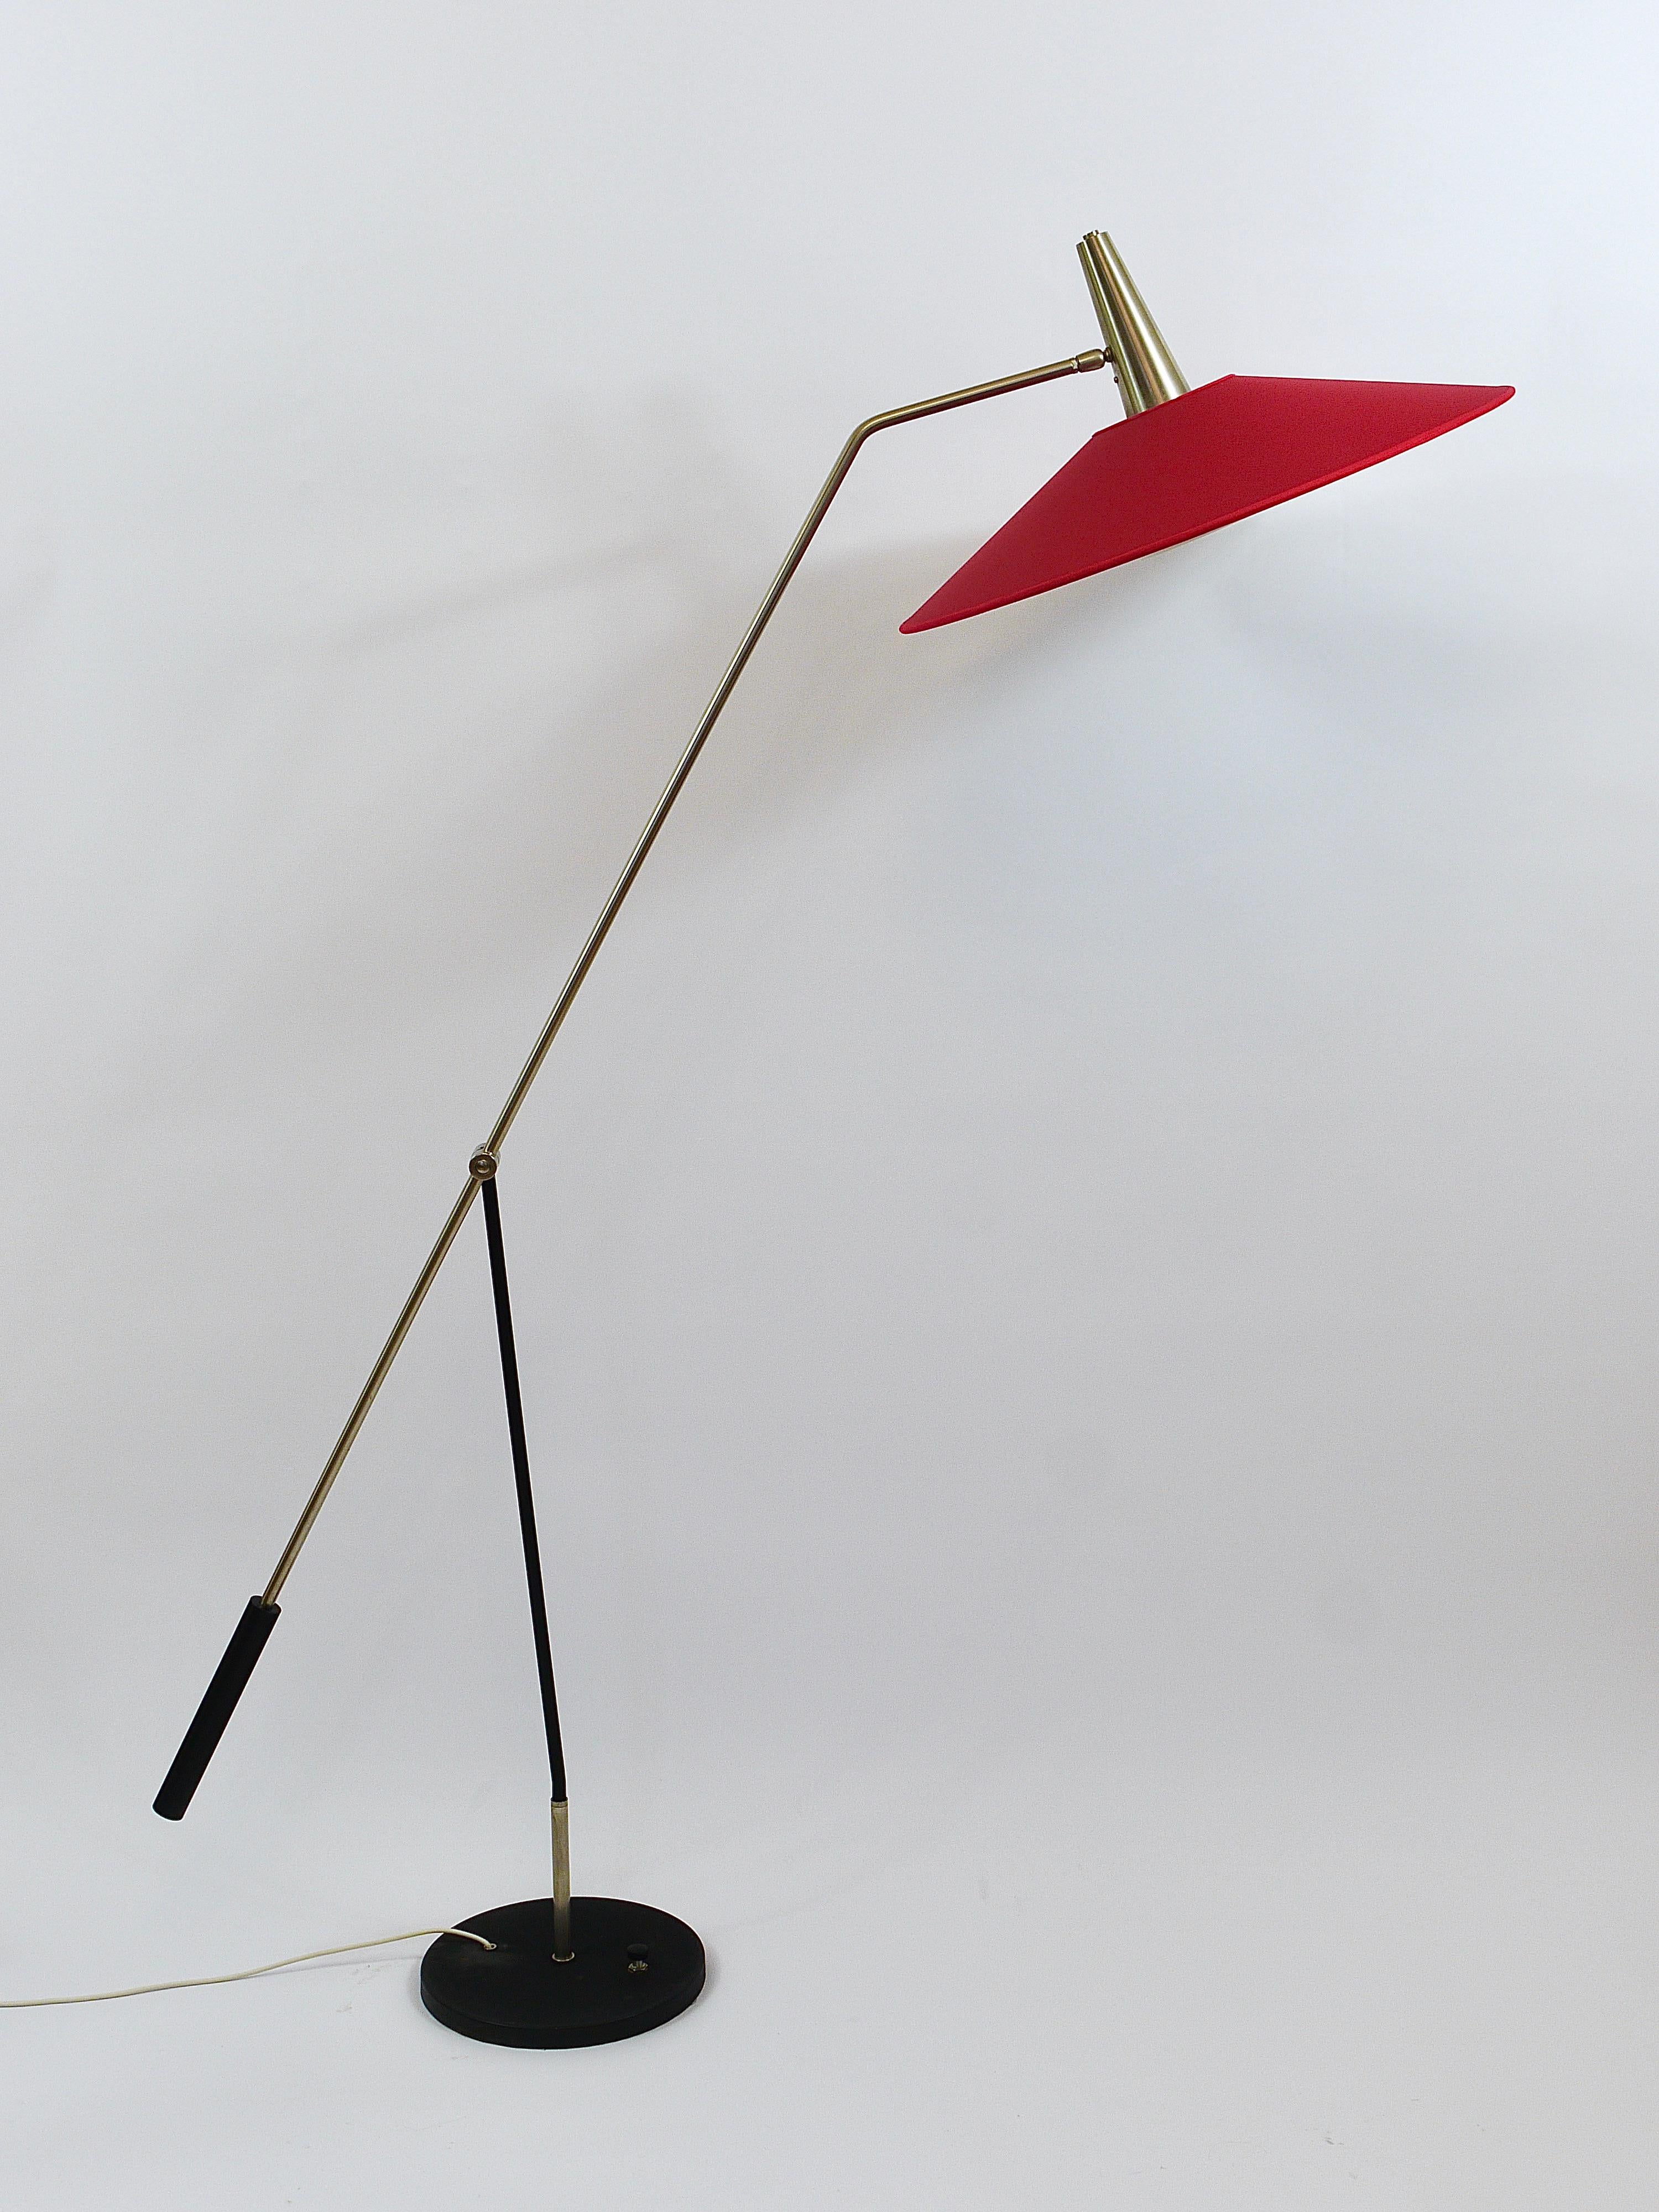 Eine elegante und schöne, orientierungsfähige modernistische Stehlampe mit Gegengewicht aus den 1960er Jahren, ausgeführt von Rupert Nikoll, Österreich. Gefertigt aus Messing mit einer schönen vernickelten Oberfläche und einem runden Drehfuß aus